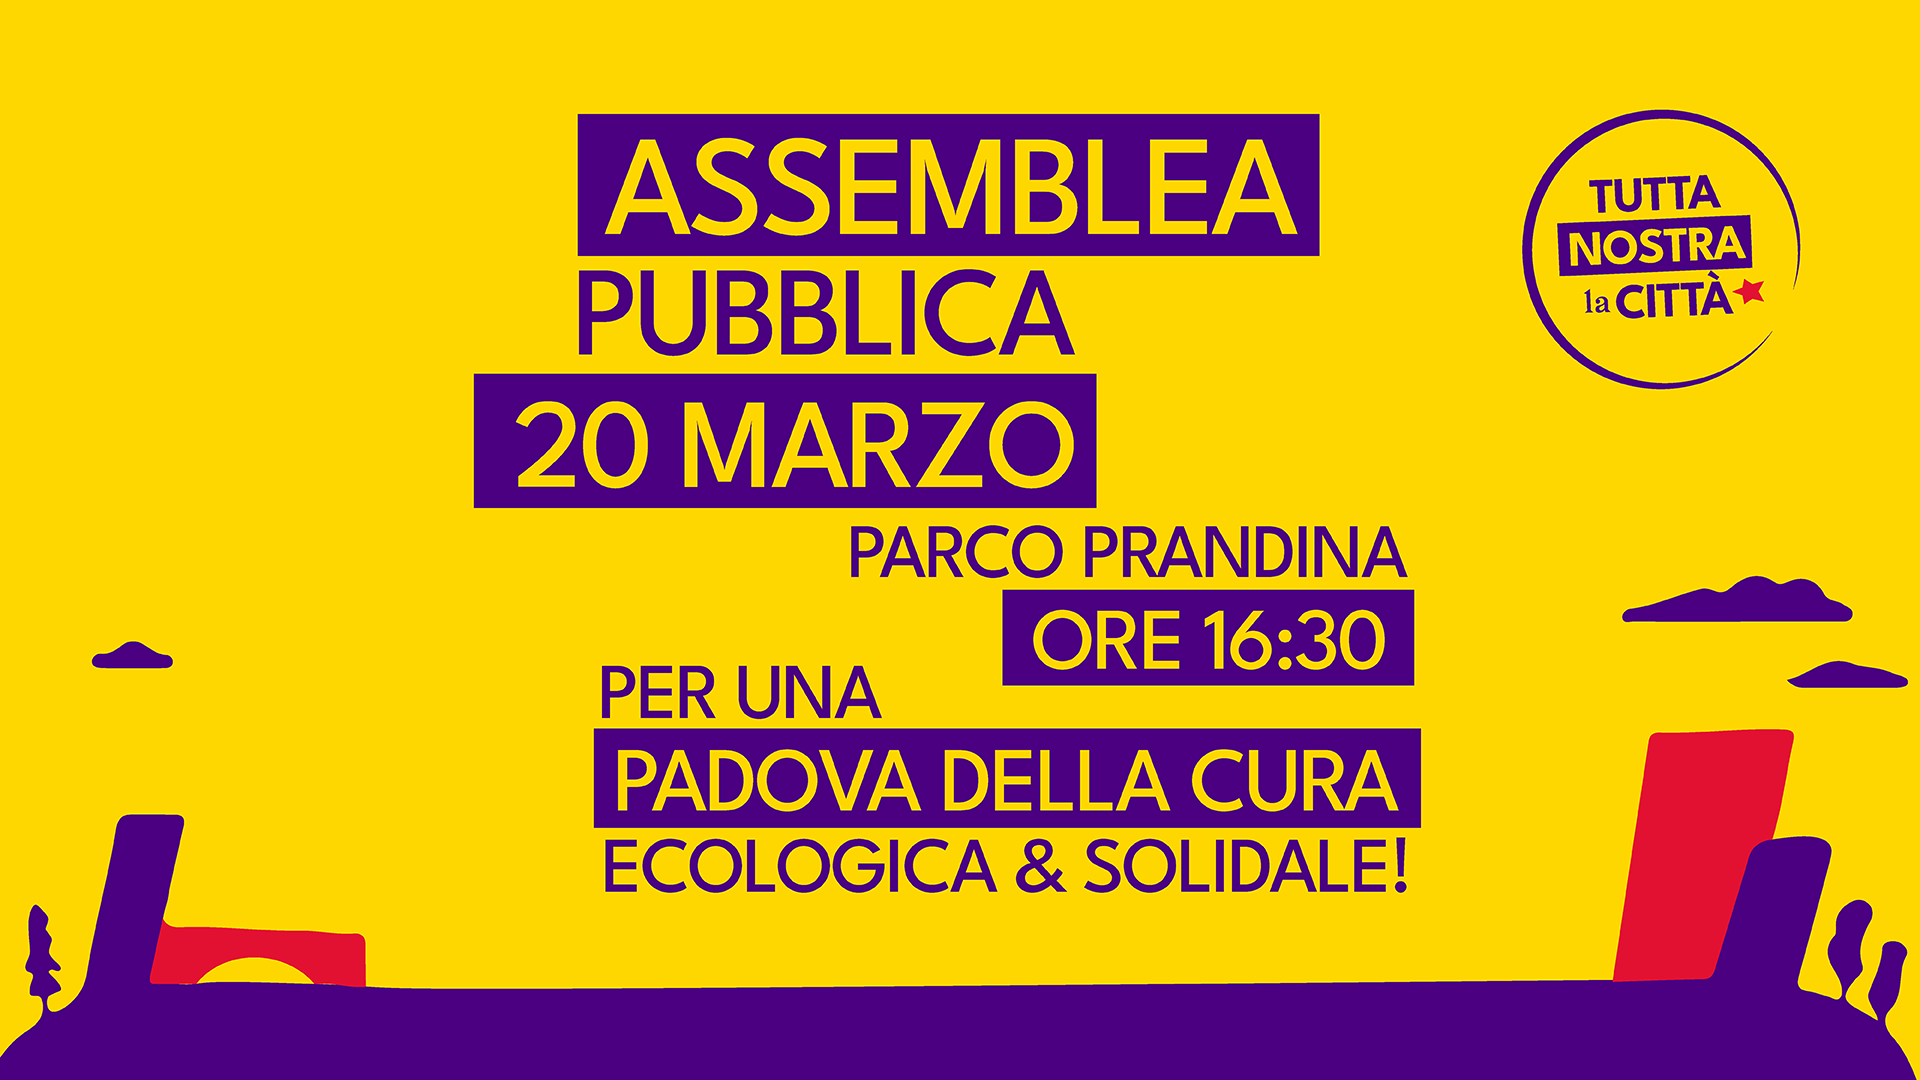 Assemblea Pubblica Tutta Nostra la Citta Padova 20 marzo ore 16:30 al Parco Prandina